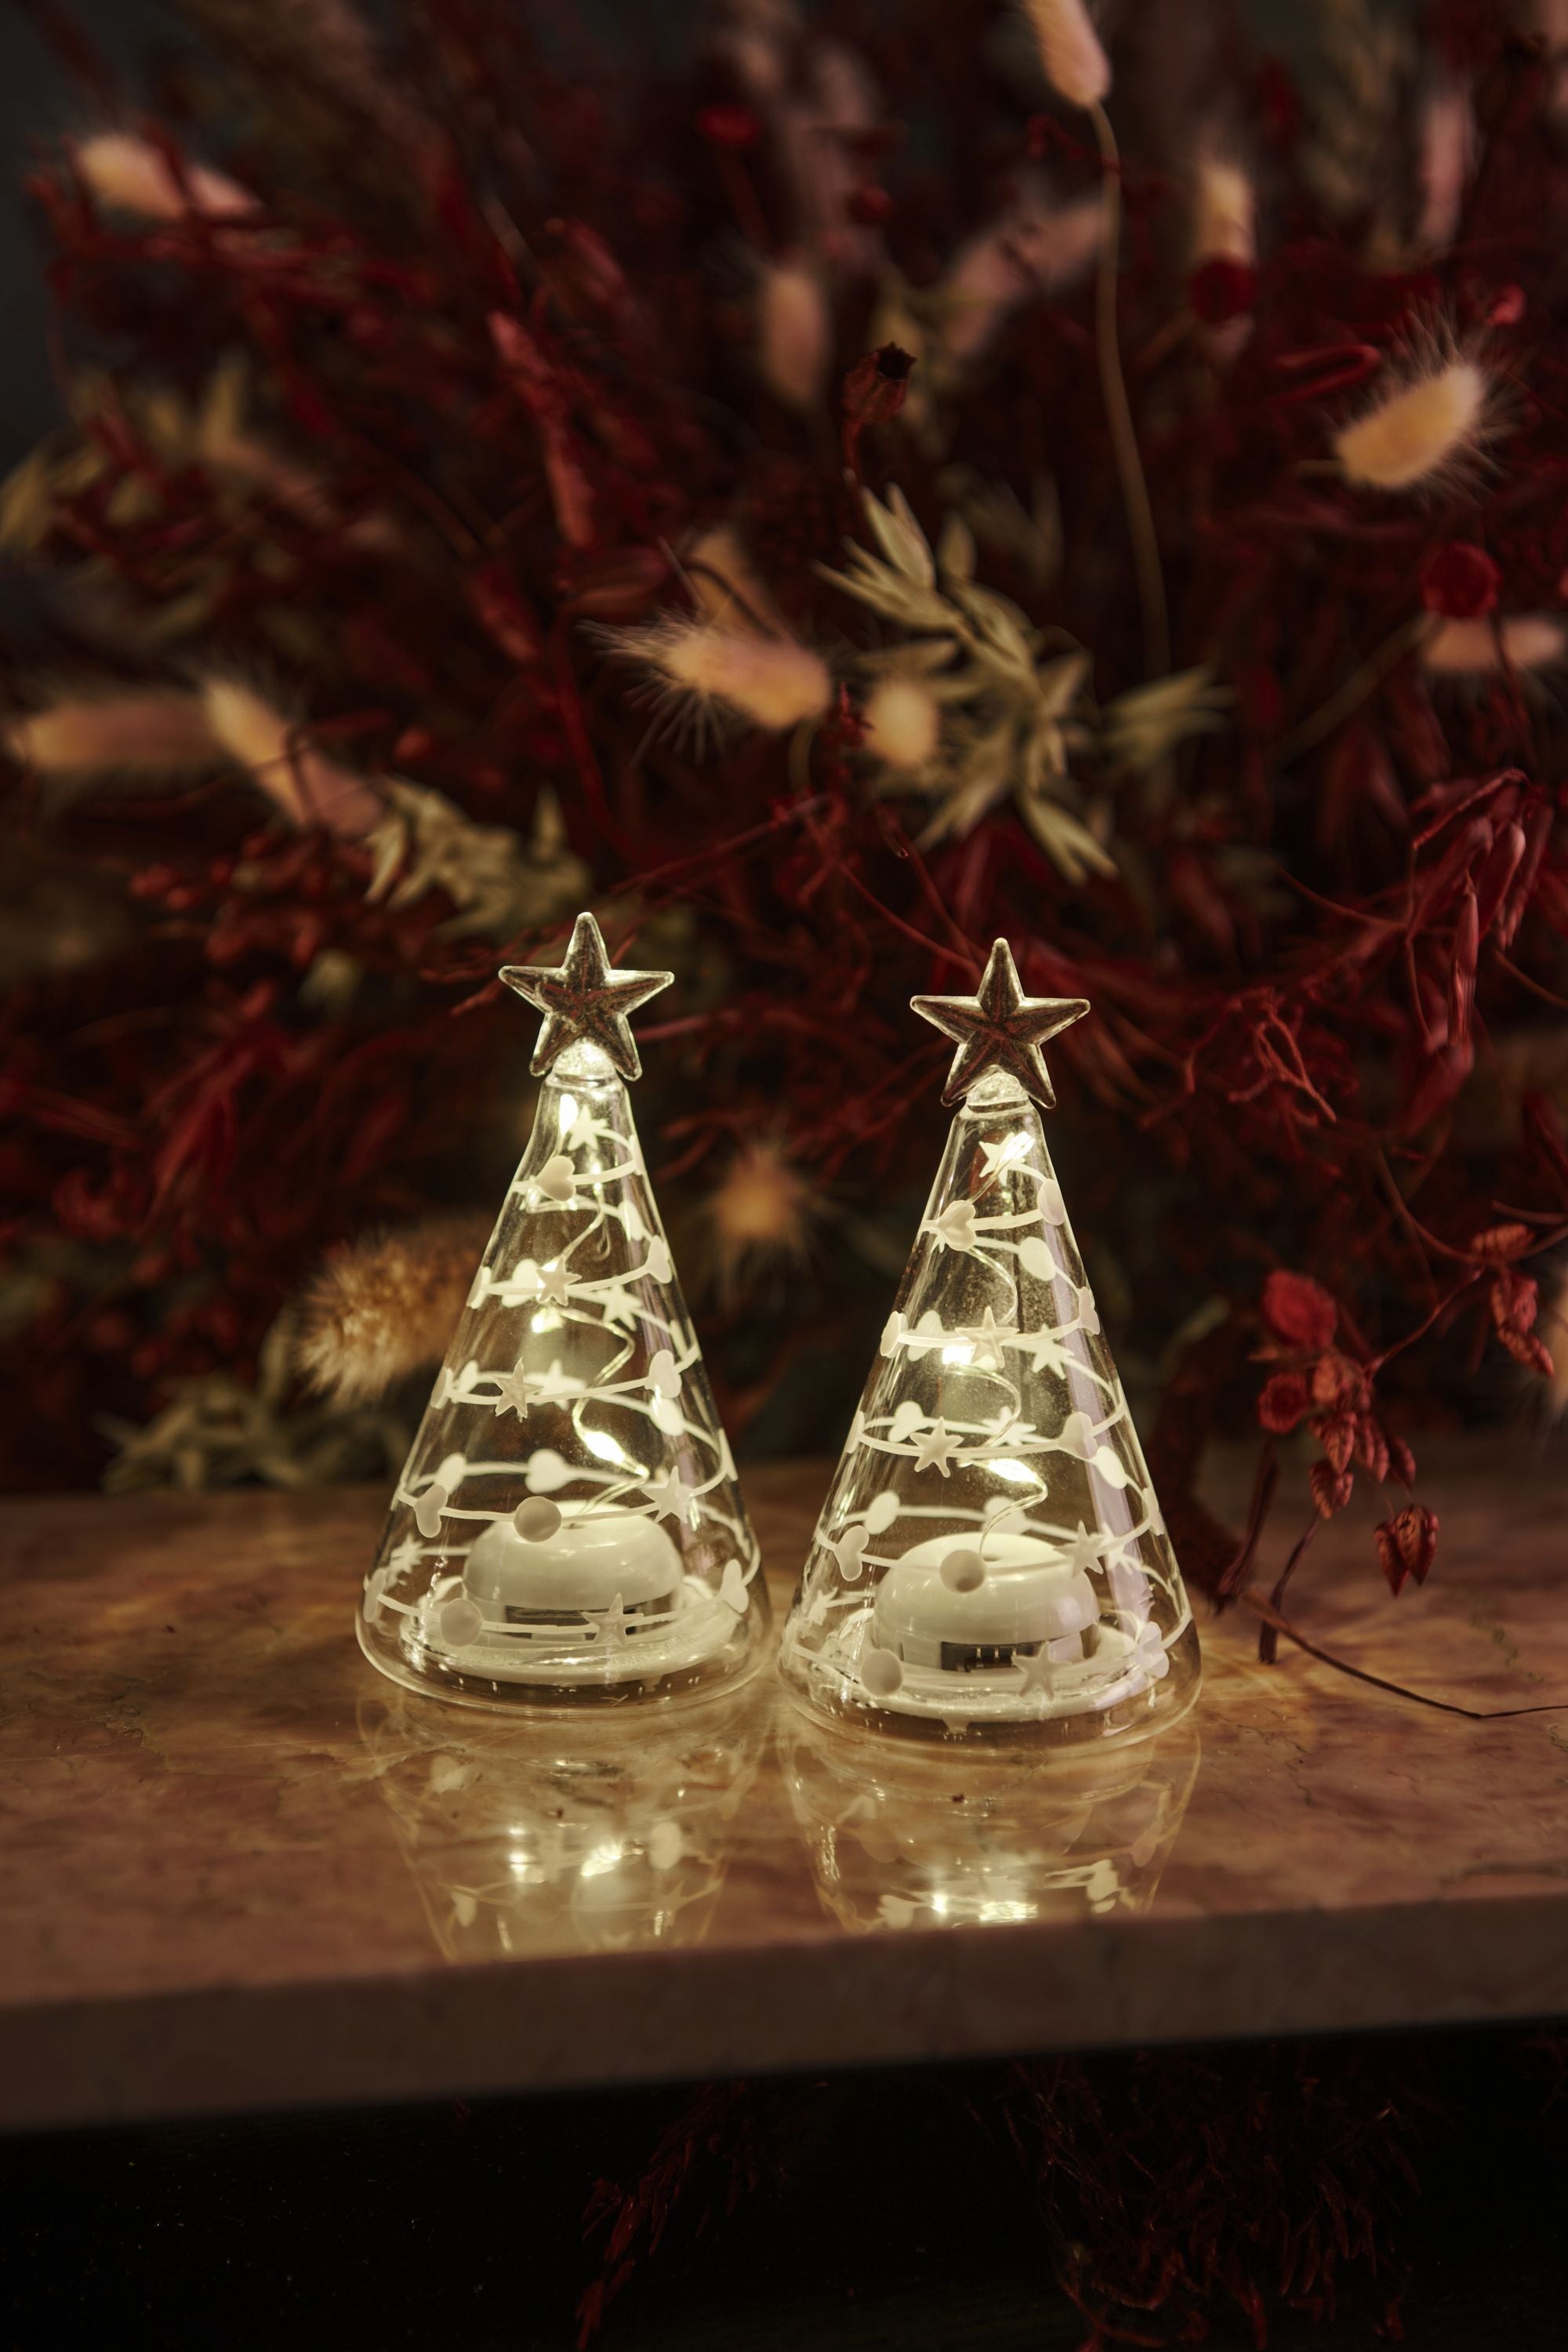 Sirius Sweet Christmas Tree 2 PCS, H9 cm, blanco/transparente